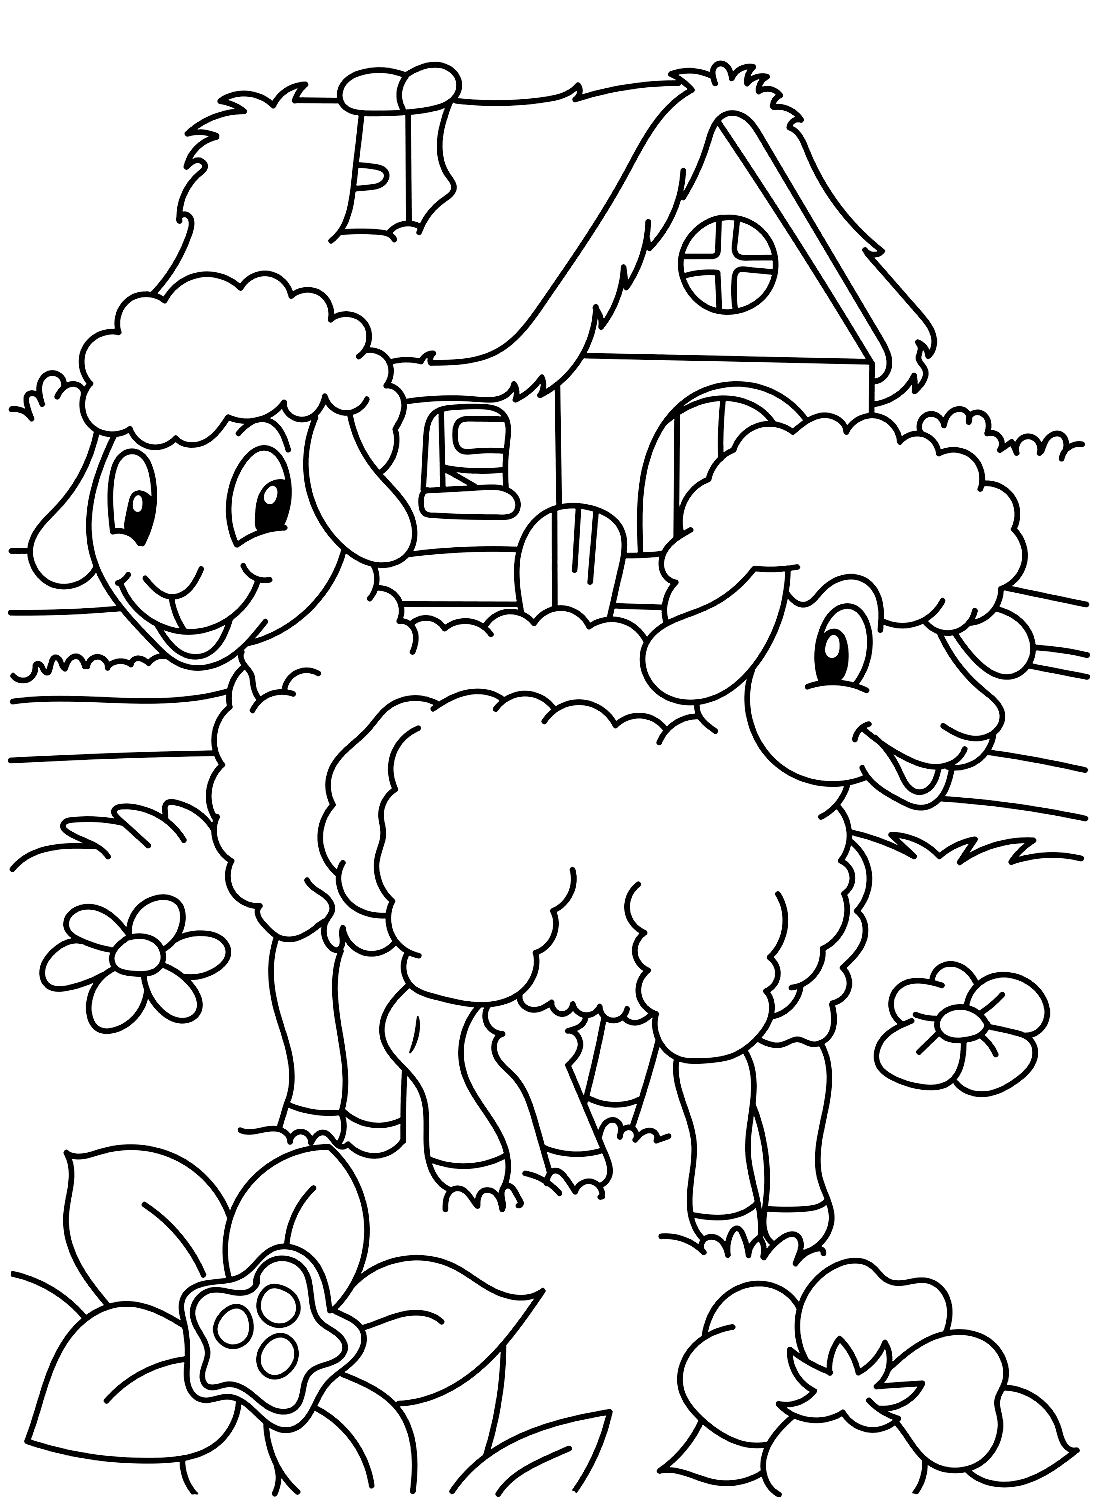 A adorável página colorida de Sheepe de Sheep